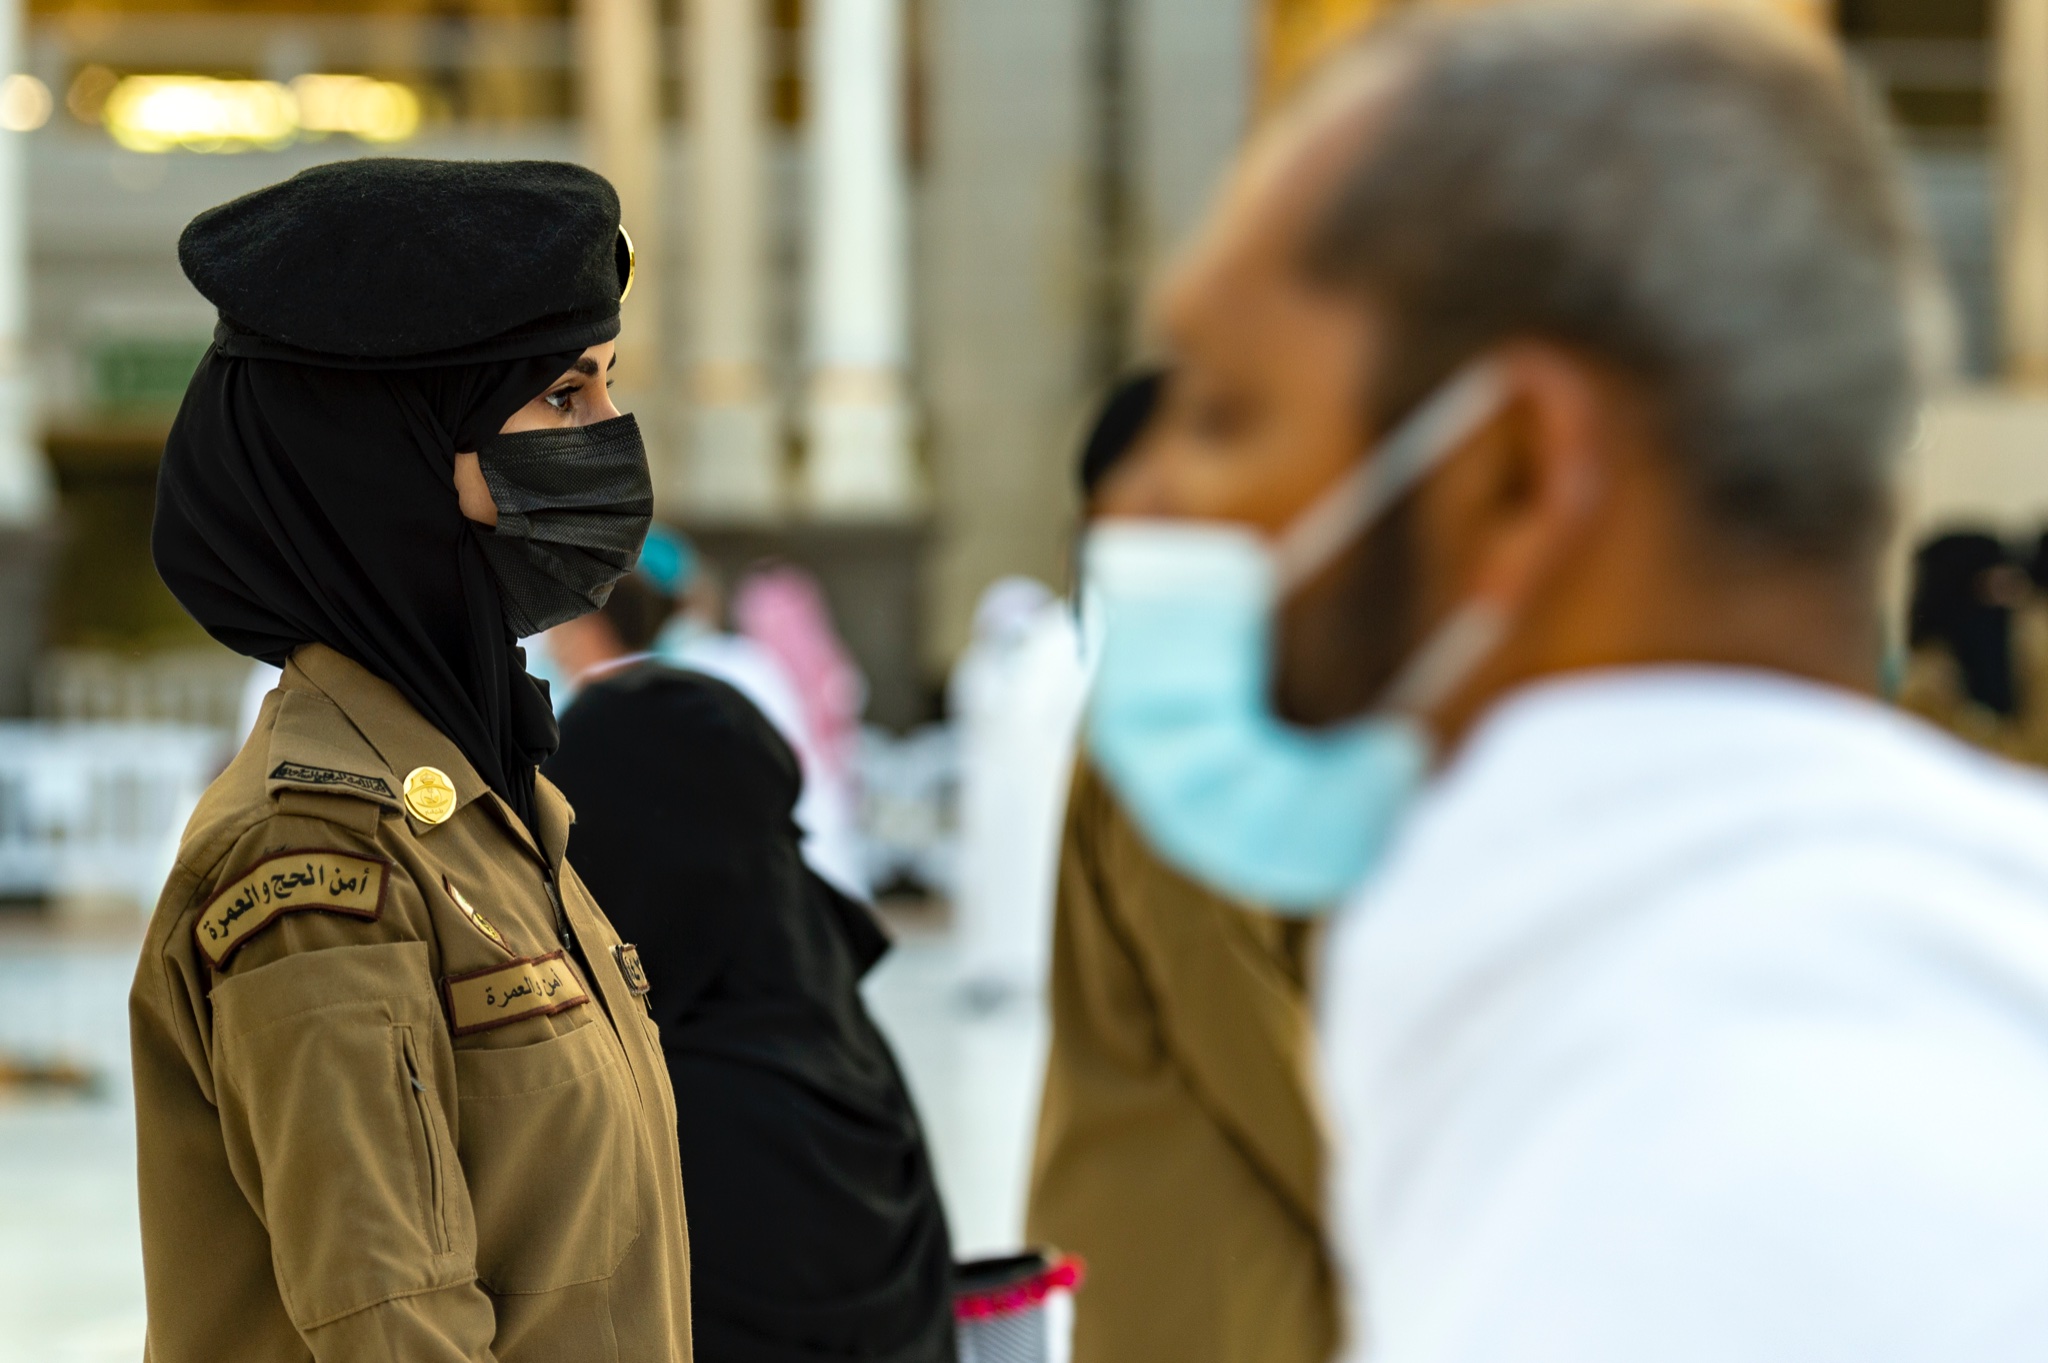 صورة: “عهود” شرطية سعودية جميلة بزي عسكري عند الكعبة تثير زوبعة “إعجاب” و”انتقاد”